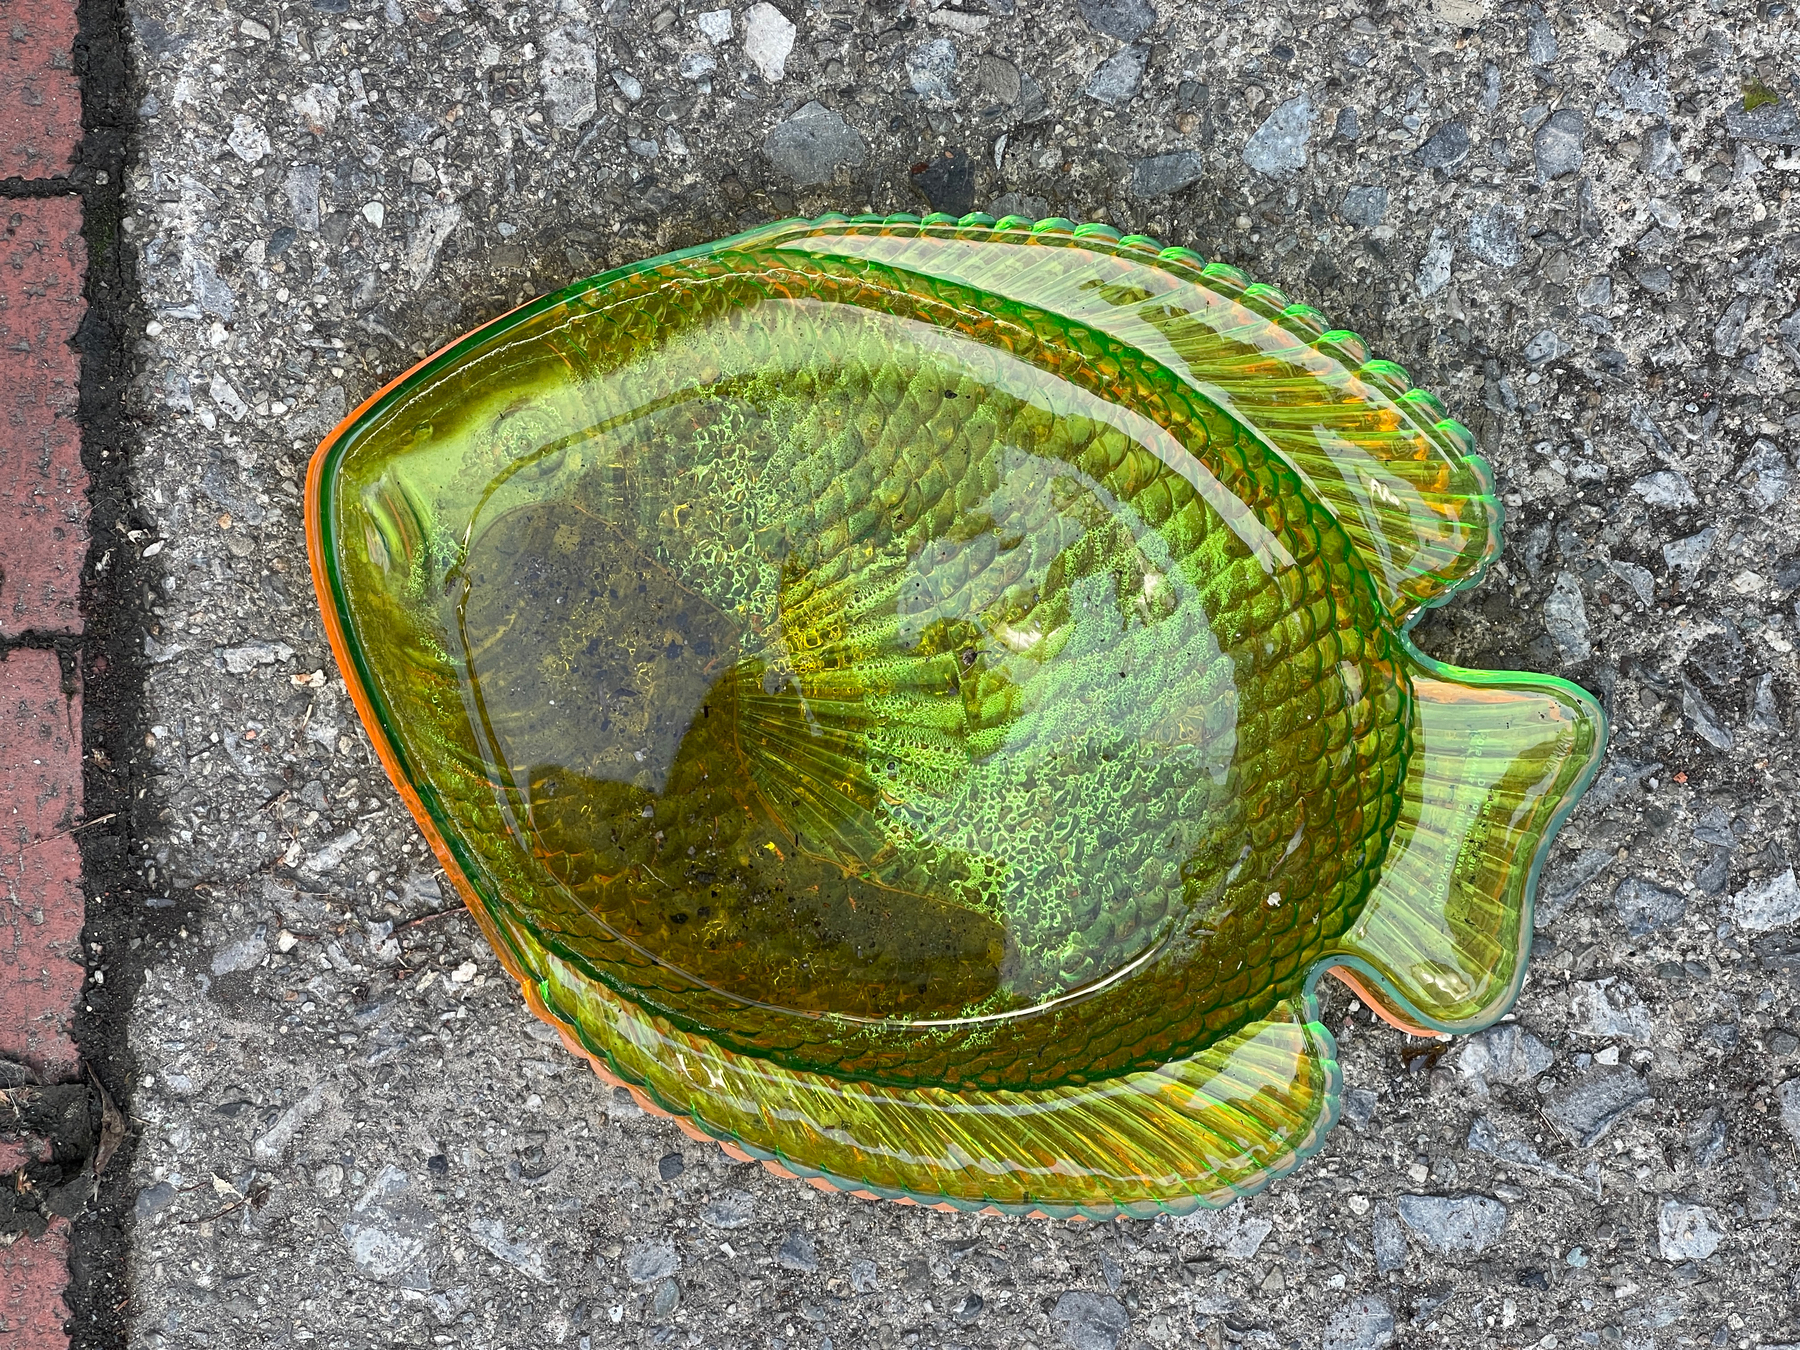 Green fish dish lying on sidewalk.